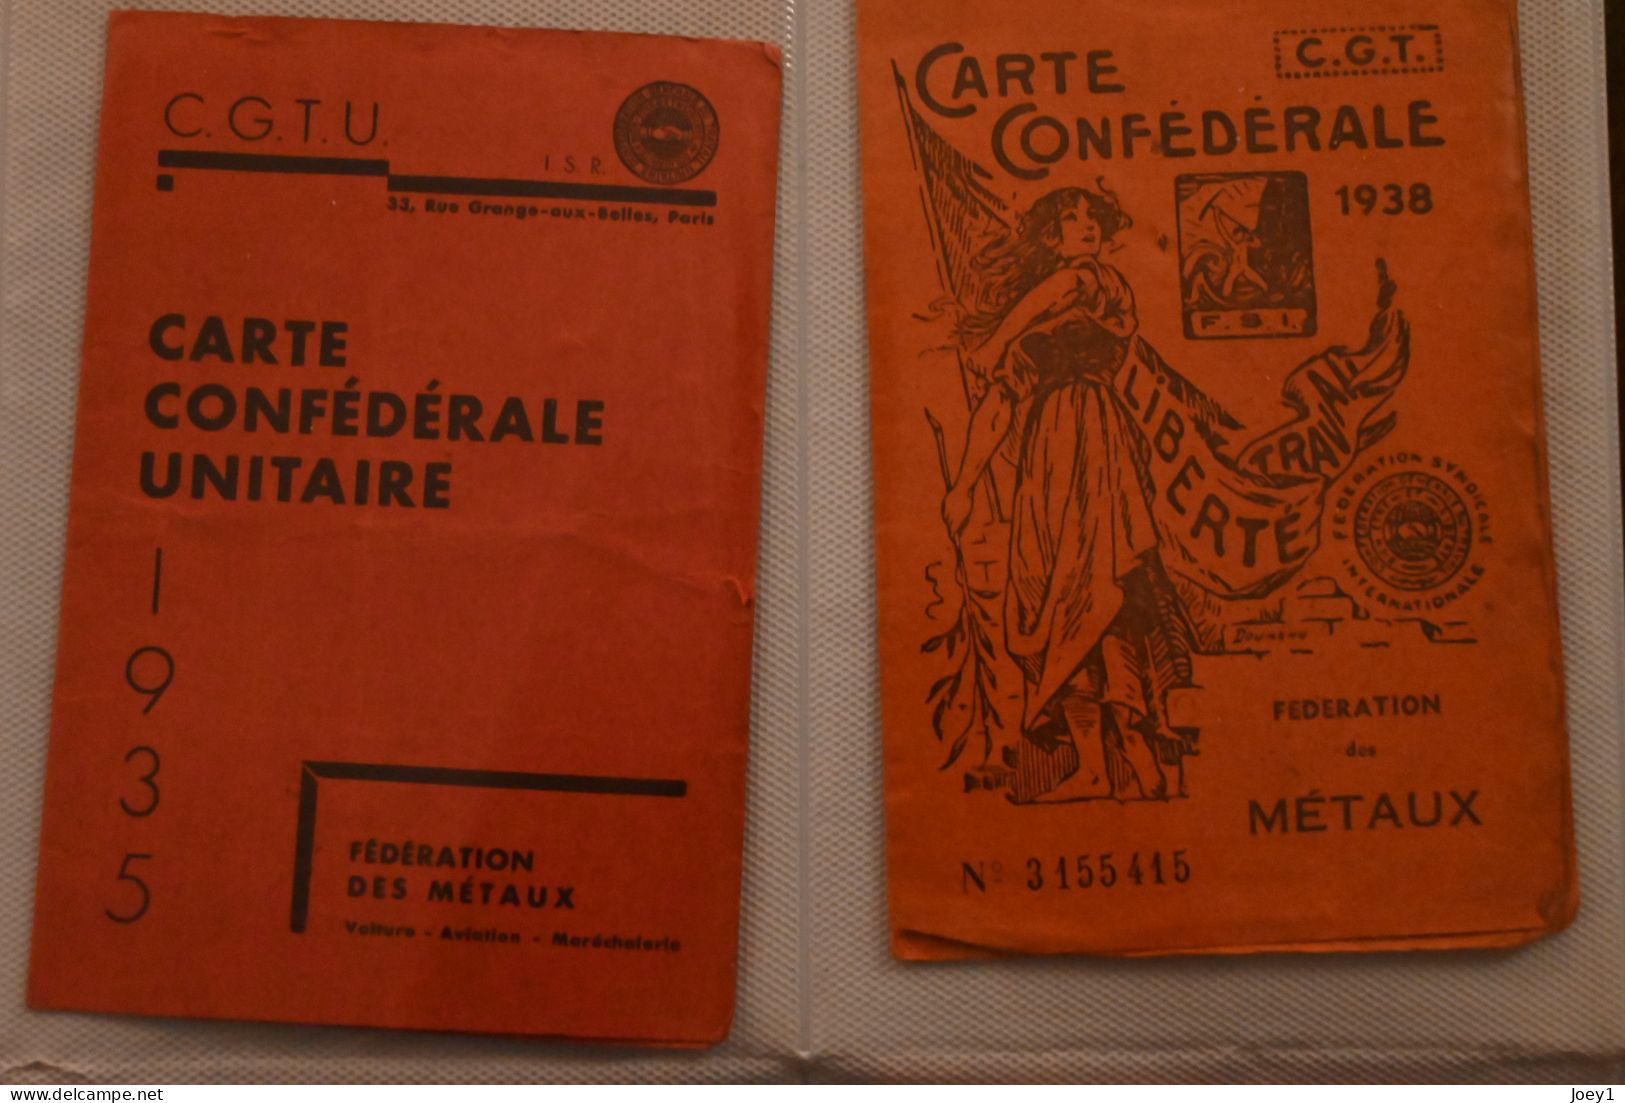 1 ensemble de carte d adhésion au parti Communiste et à la CGT de la même personne avec ses certificats de travail